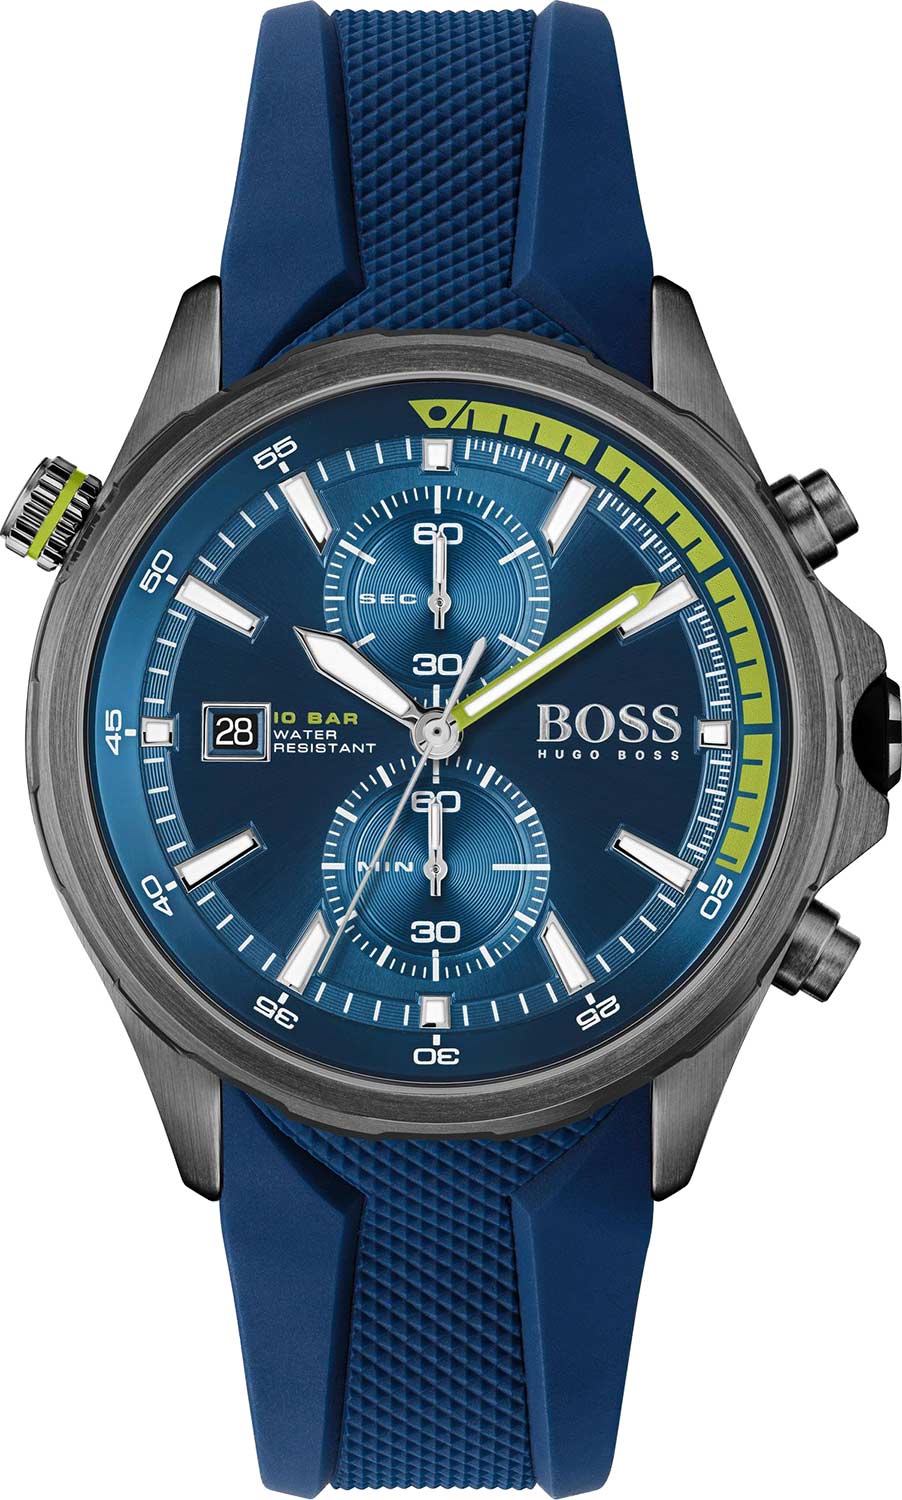   Hugo Boss HB1513821  